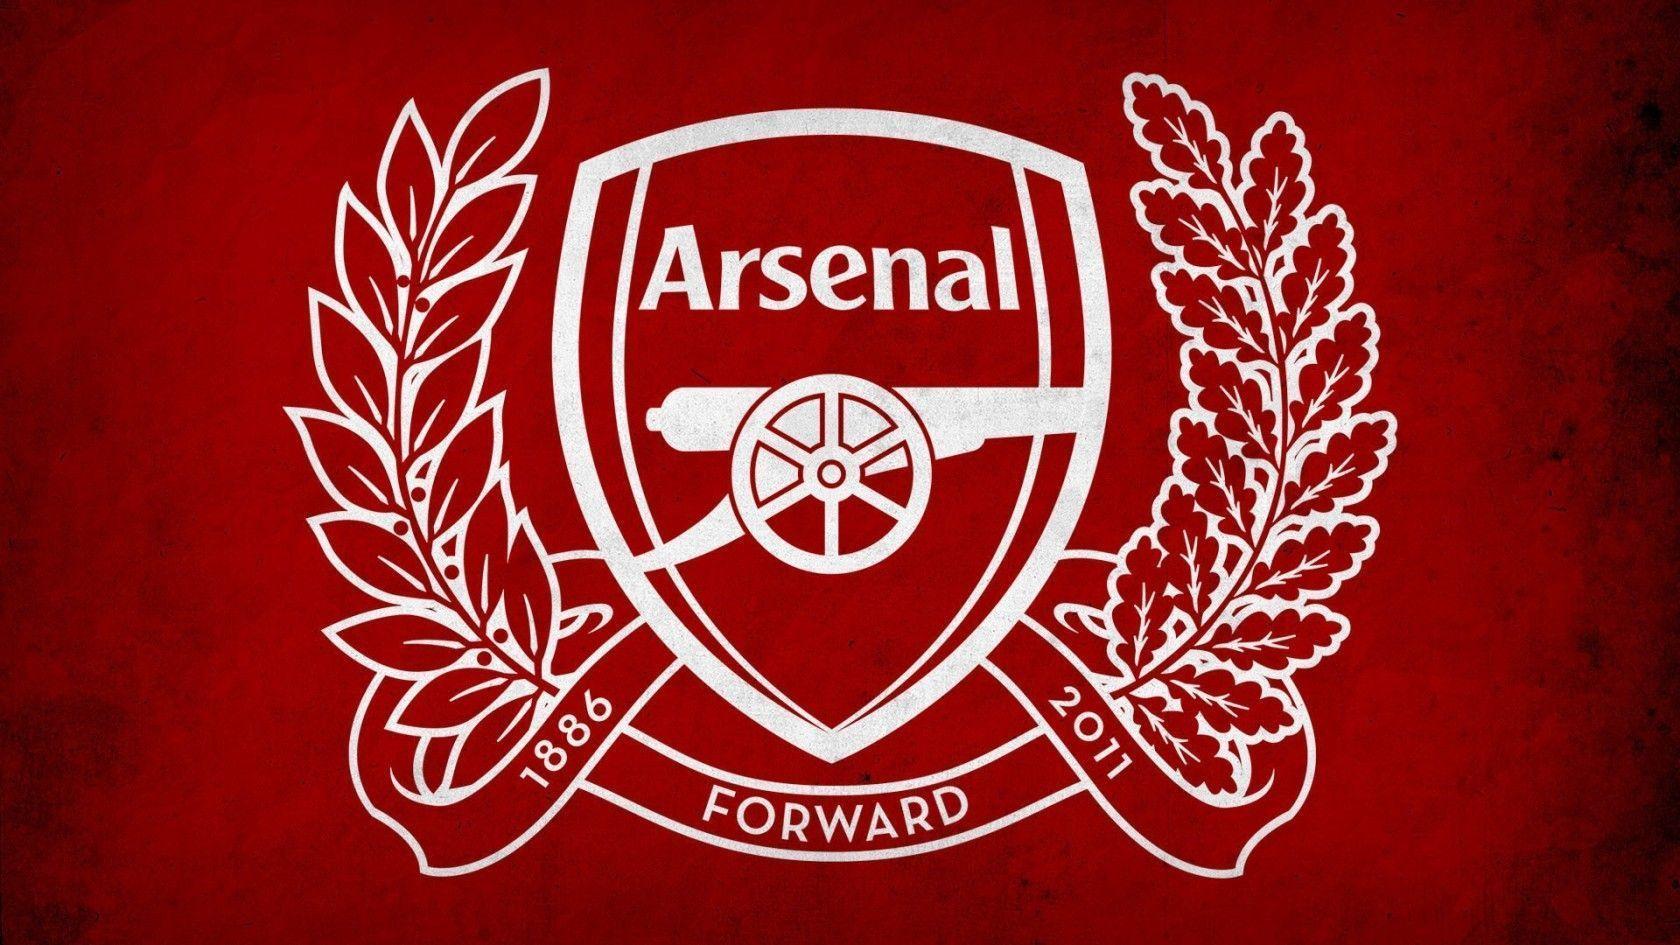 Câu lạc bộ Arsenal có khá nhiều biệt danh như “The Gunners” – “Pháo Thủ”